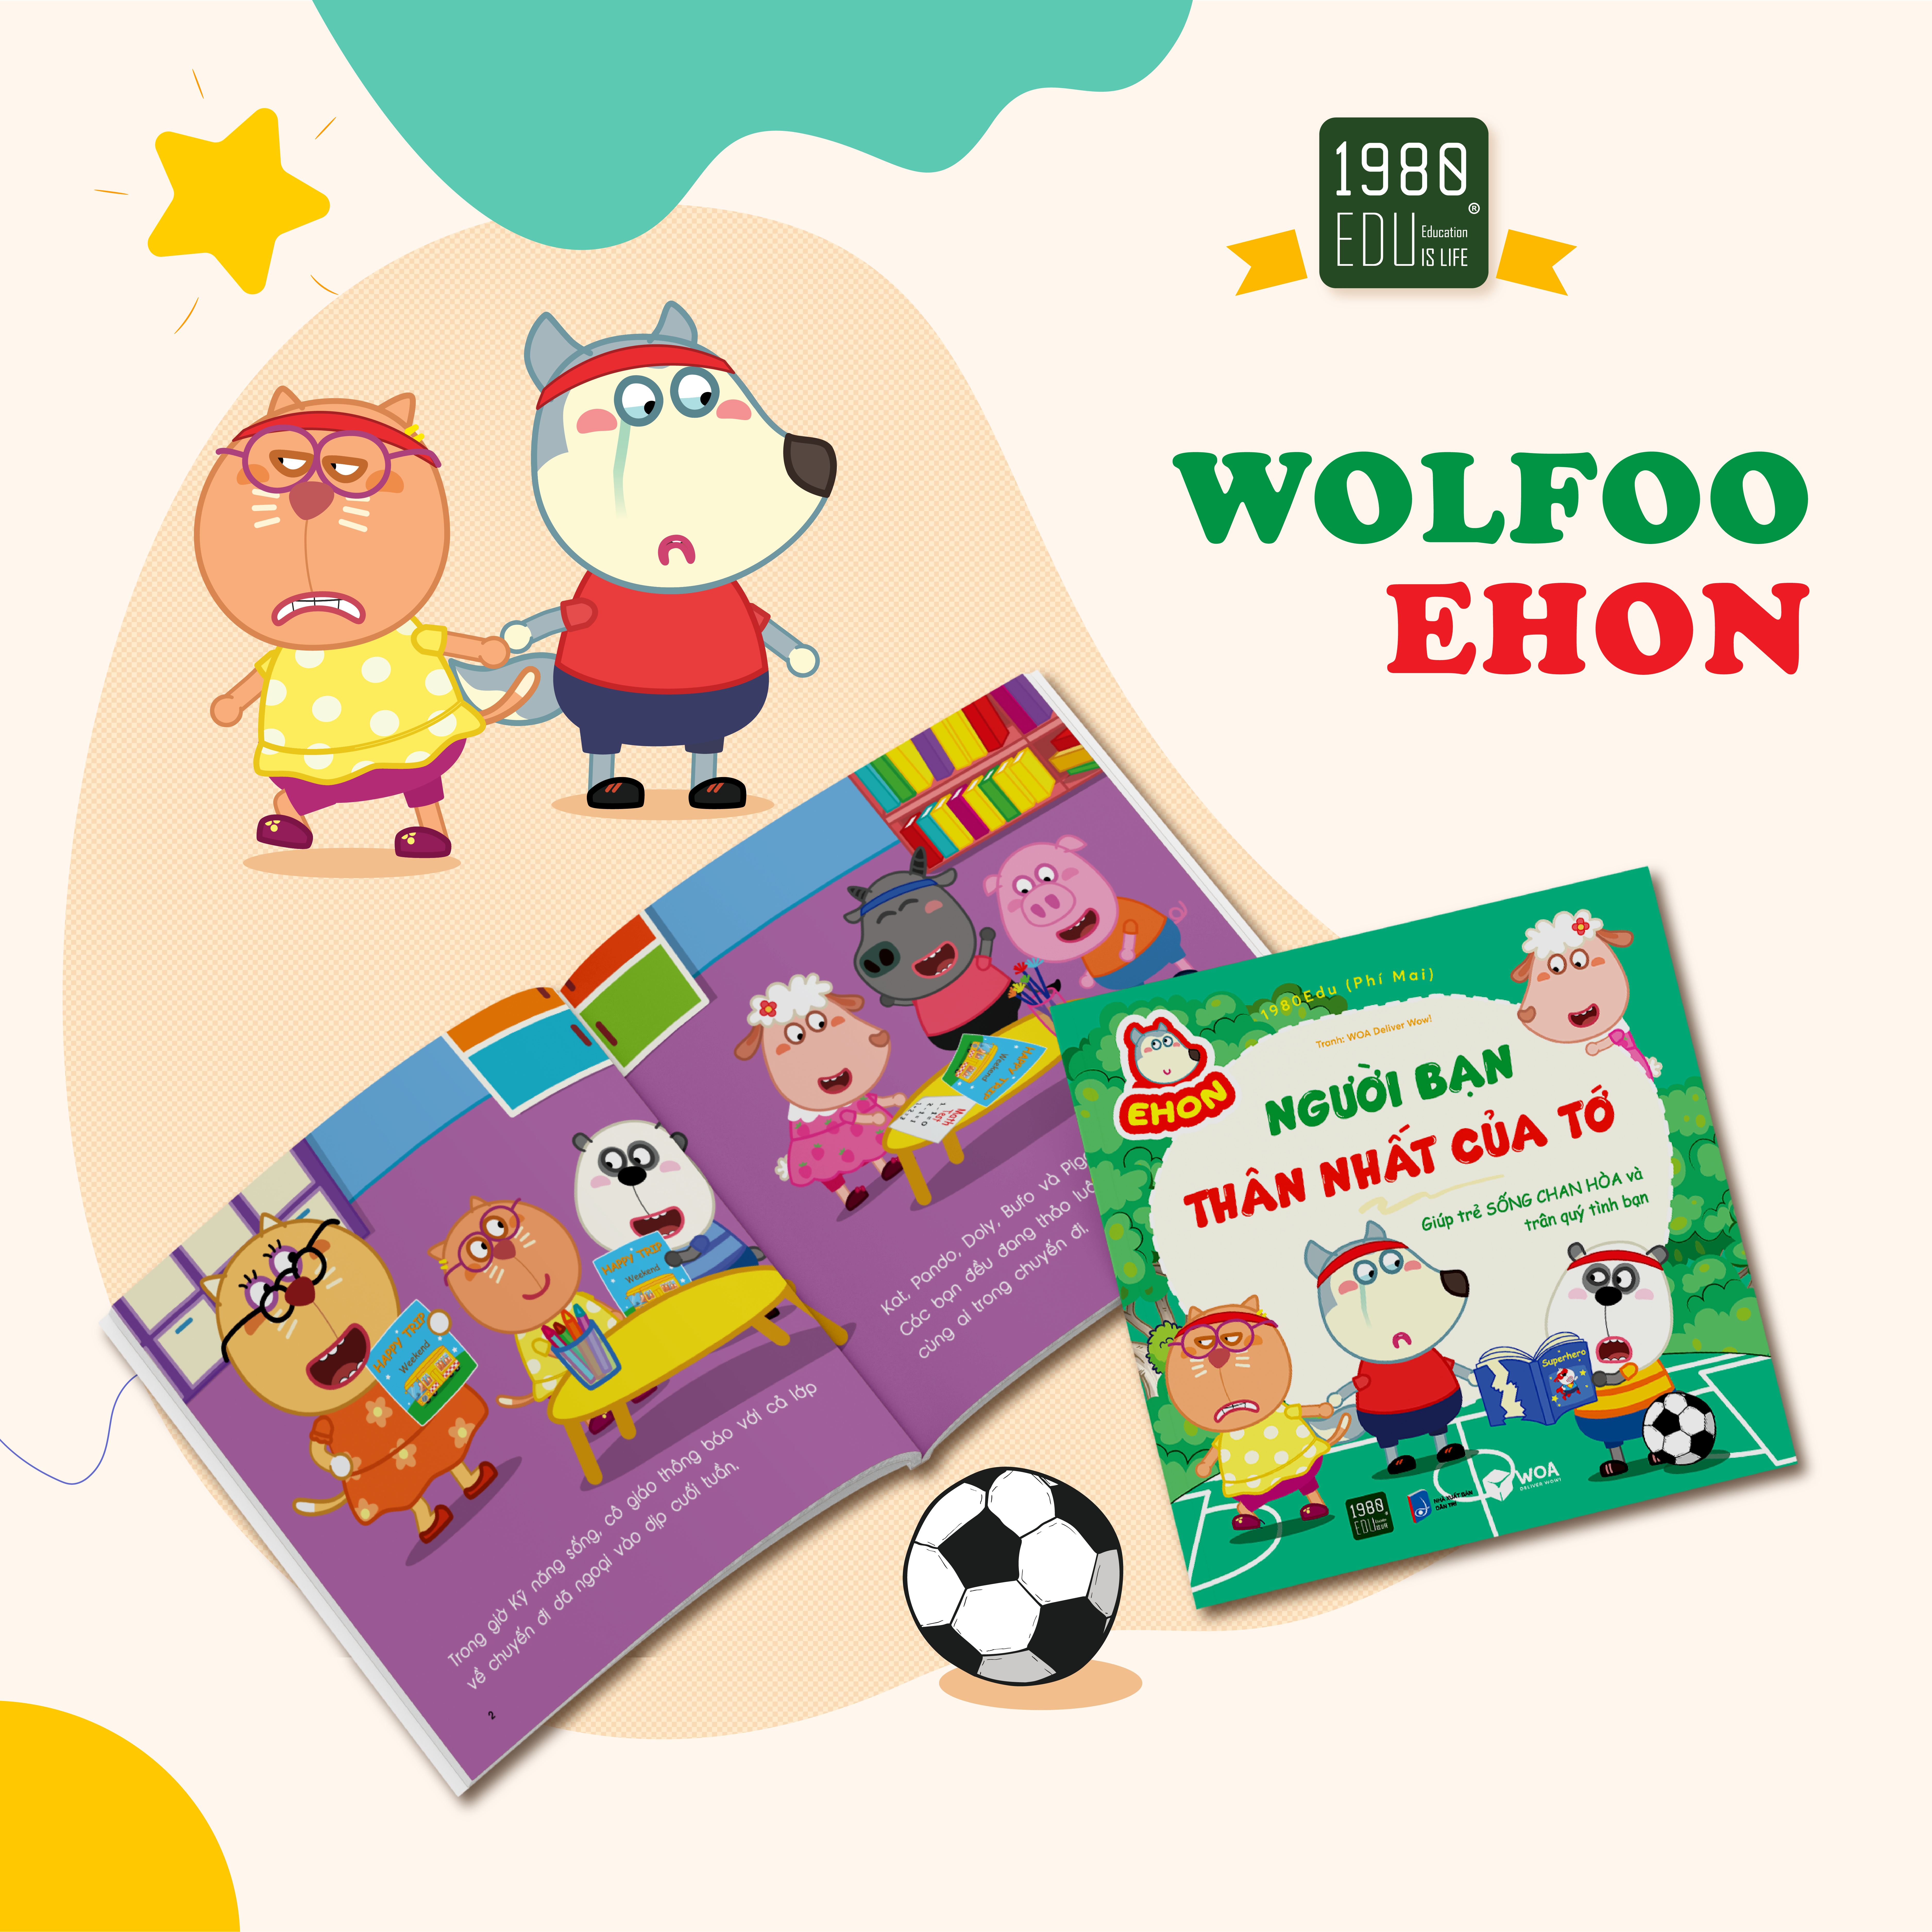 Sách Wolfoo Ehon - Người Bạn Thân Nhất Của Tớ